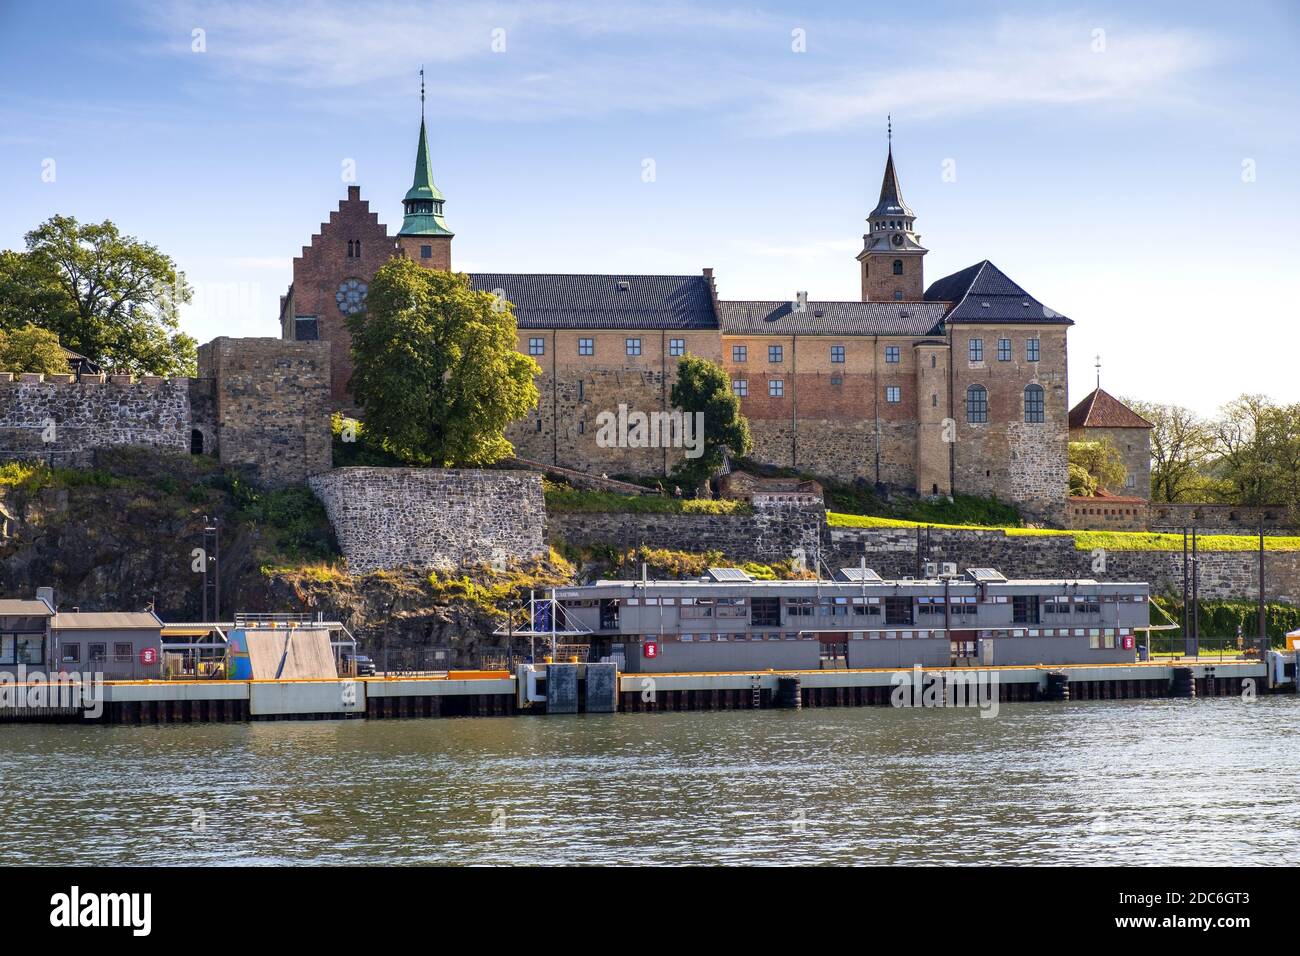 Oslo, Ostlandet / Norwegen - 2019/09/02: Panoramablick auf die mittelalterliche Akershus Festung - Akershus Festning - historische königliche Residenz am Oslofjorden Meer Stockfoto